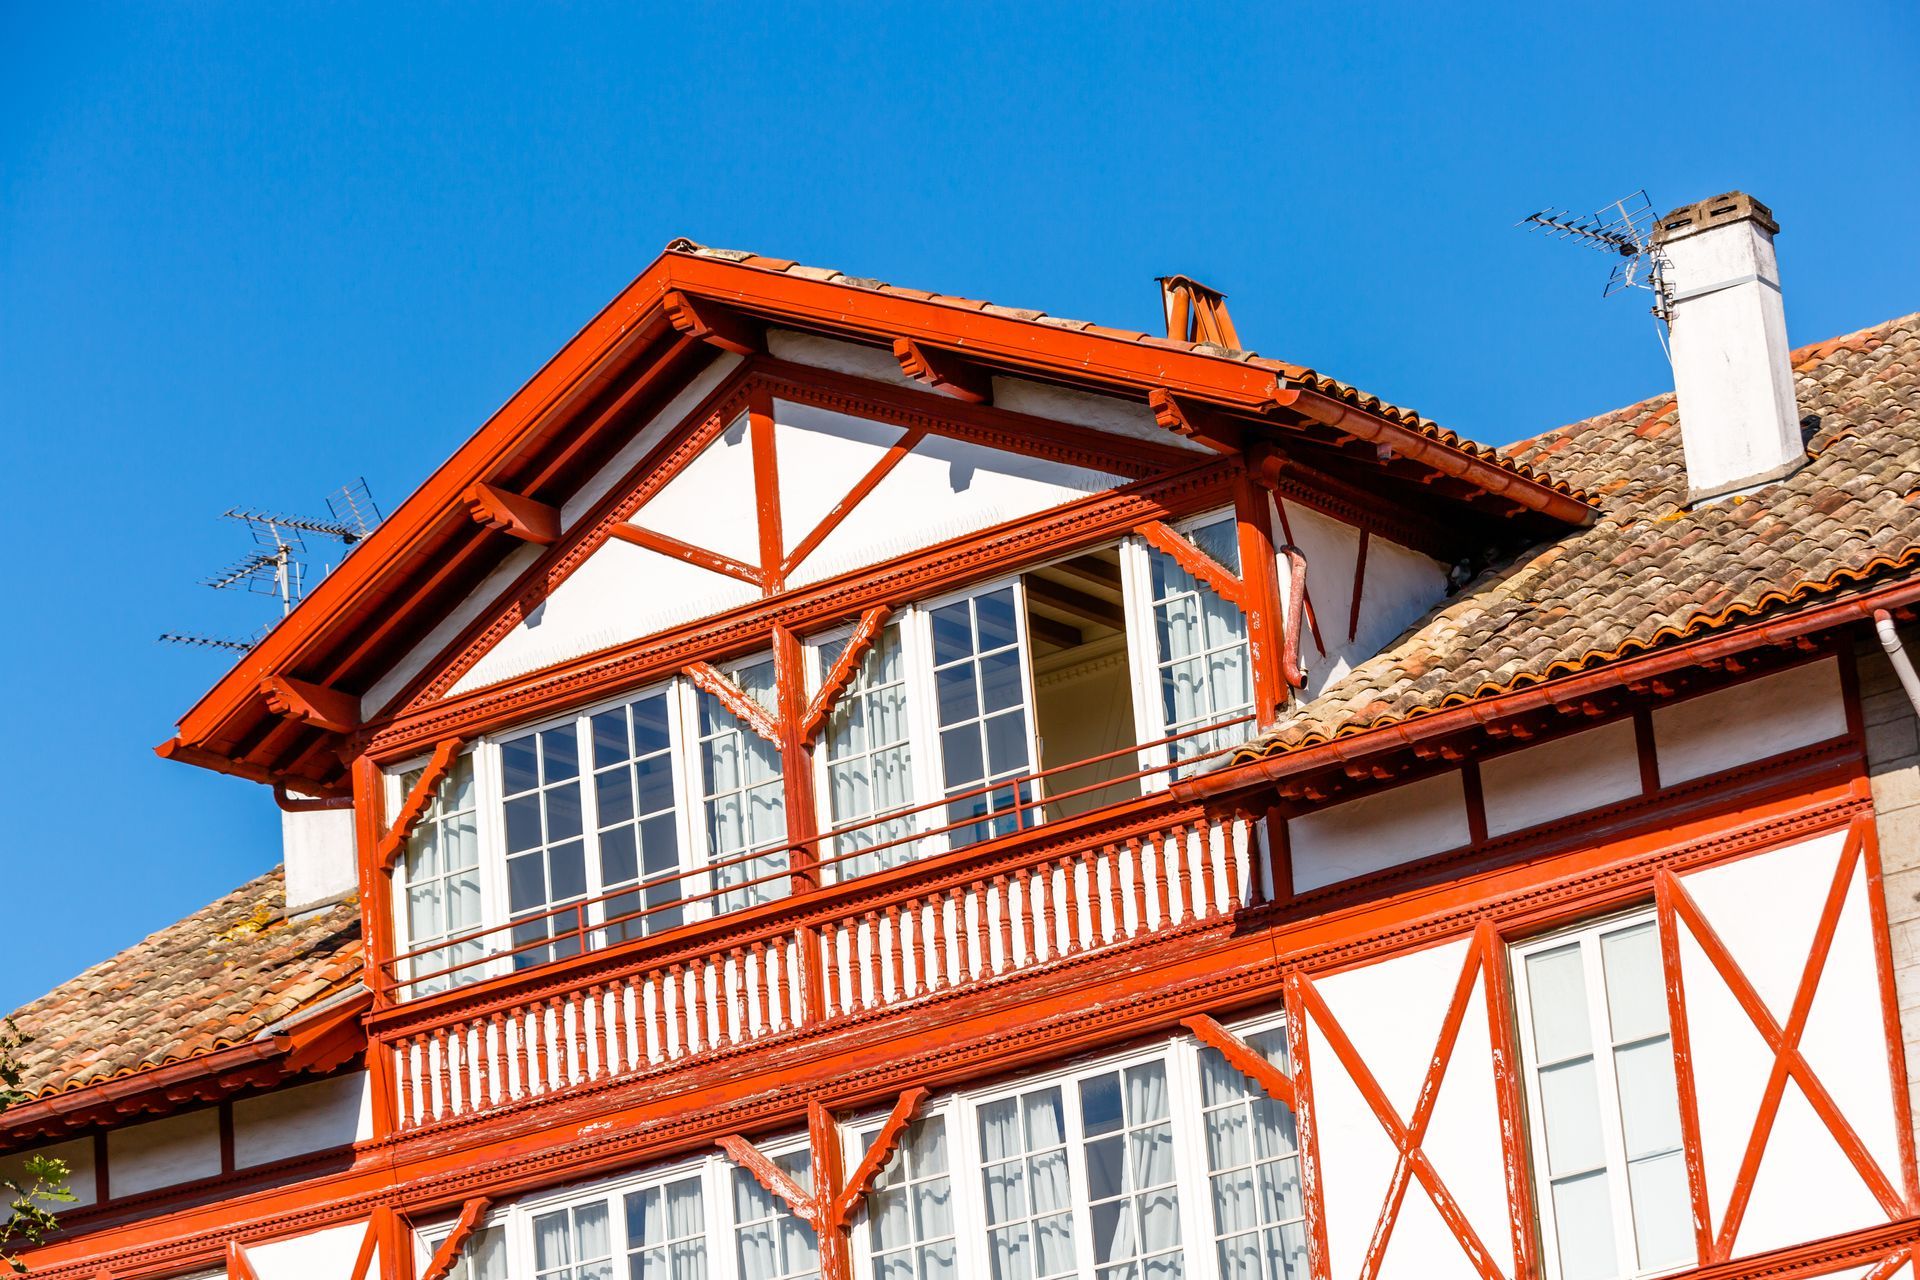 Vue sur une toiture d'une maison basque